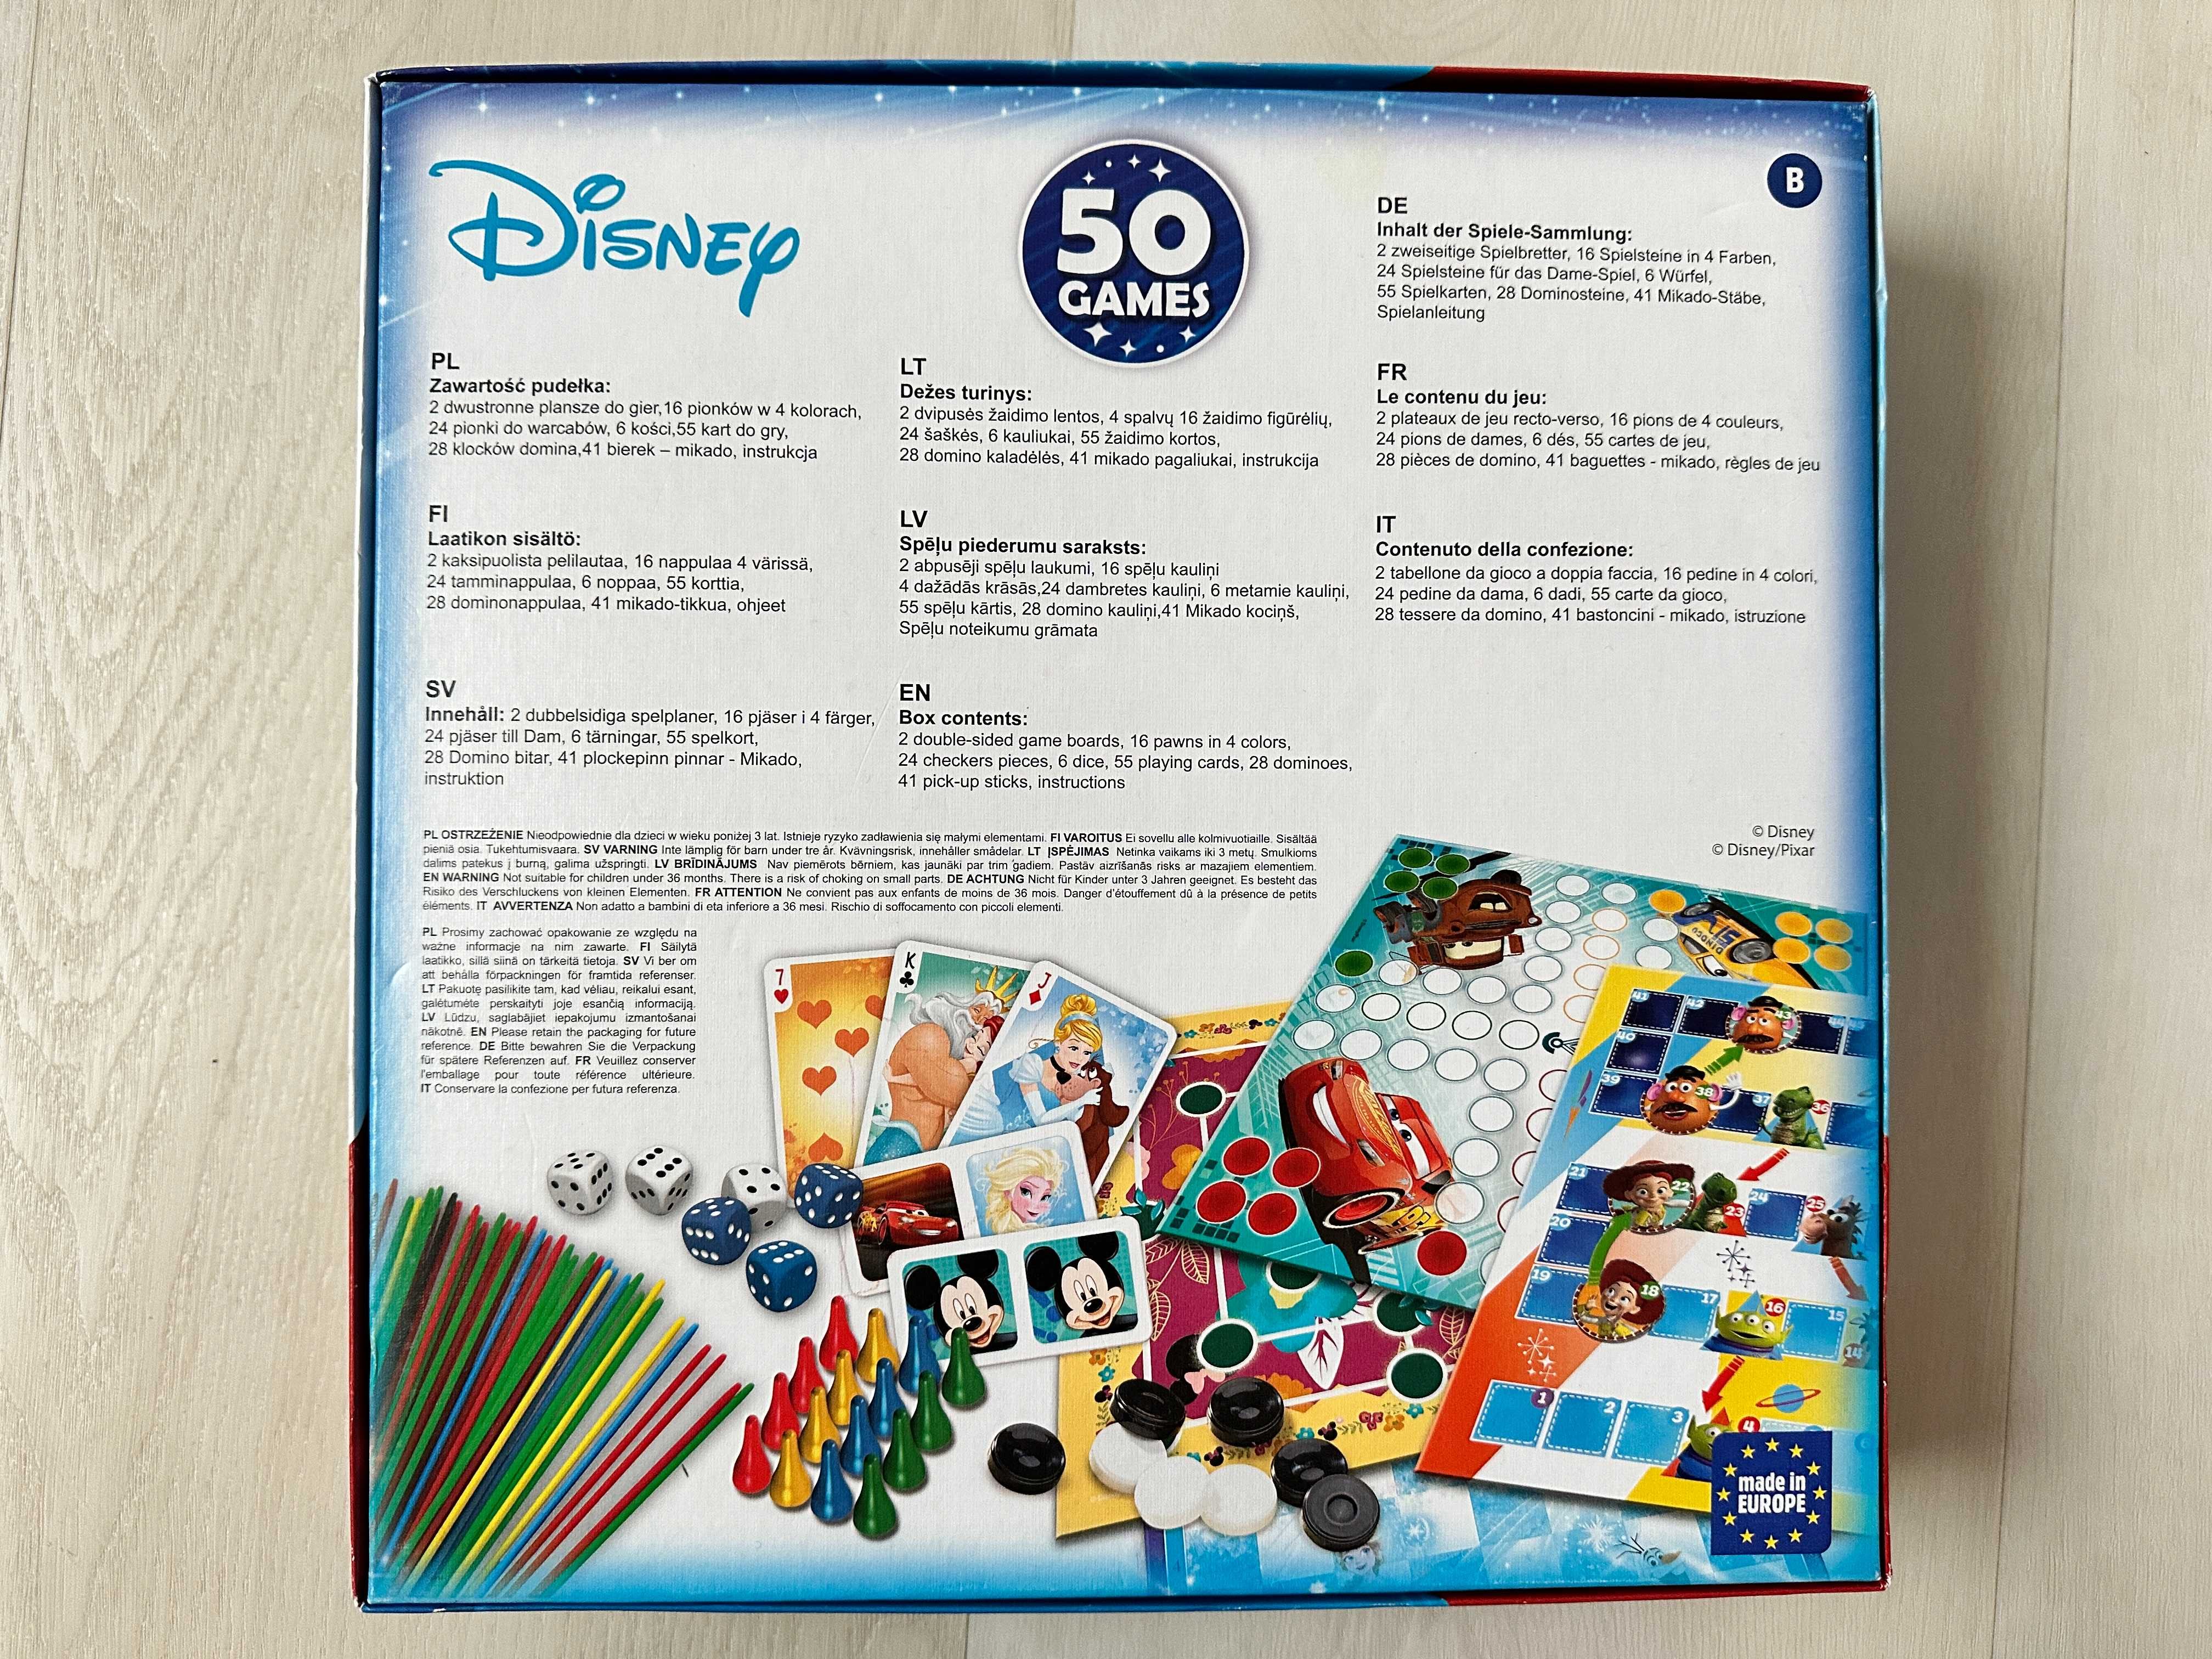 Gra planszowa Trefl Disney 50 klasycznych gier nowa odpakowana